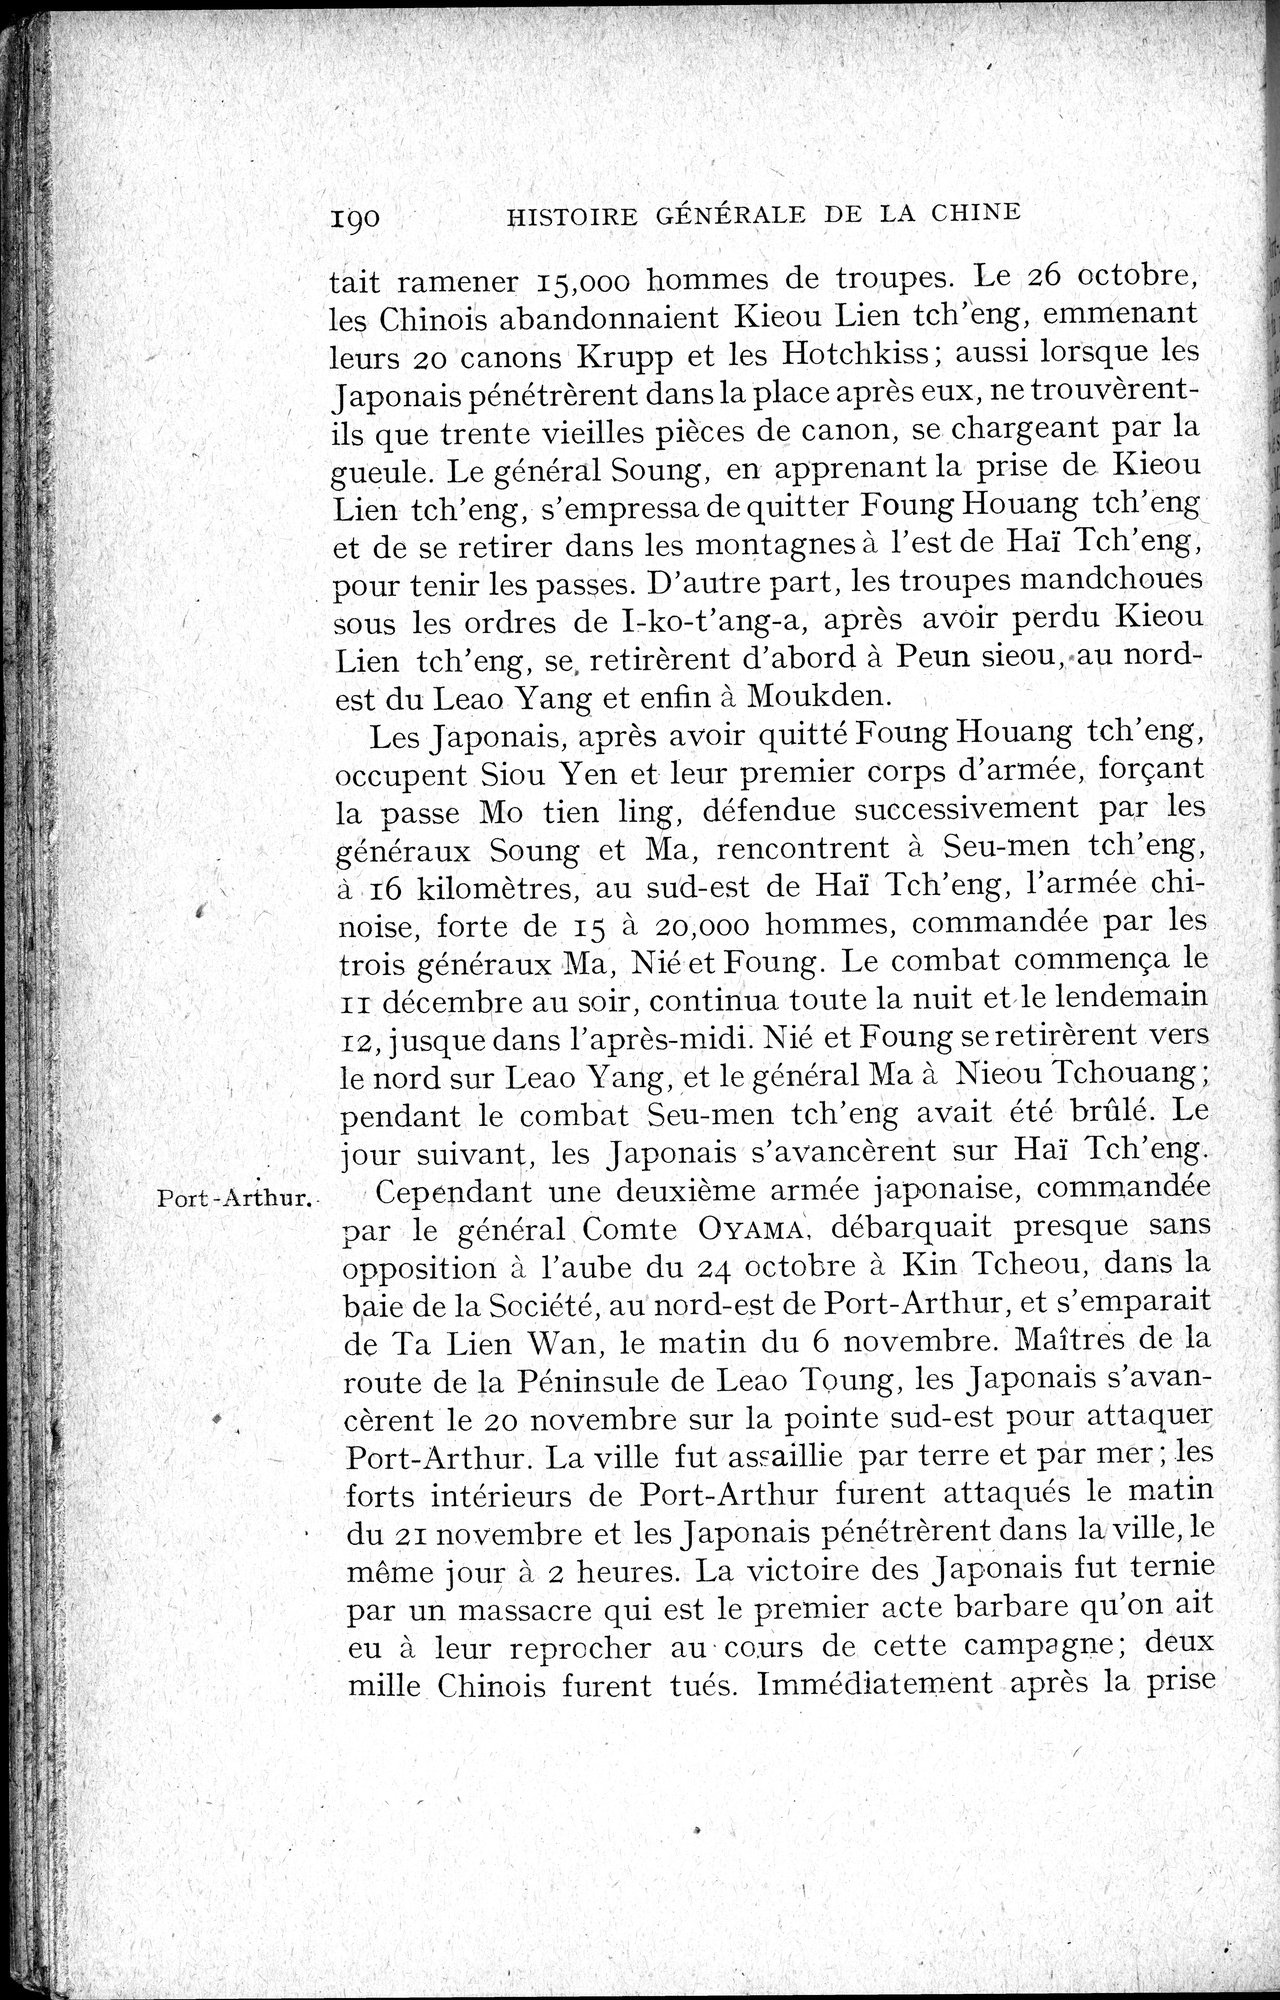 Histoire Générale de la Chine : vol.4 / Page 192 (Grayscale High Resolution Image)